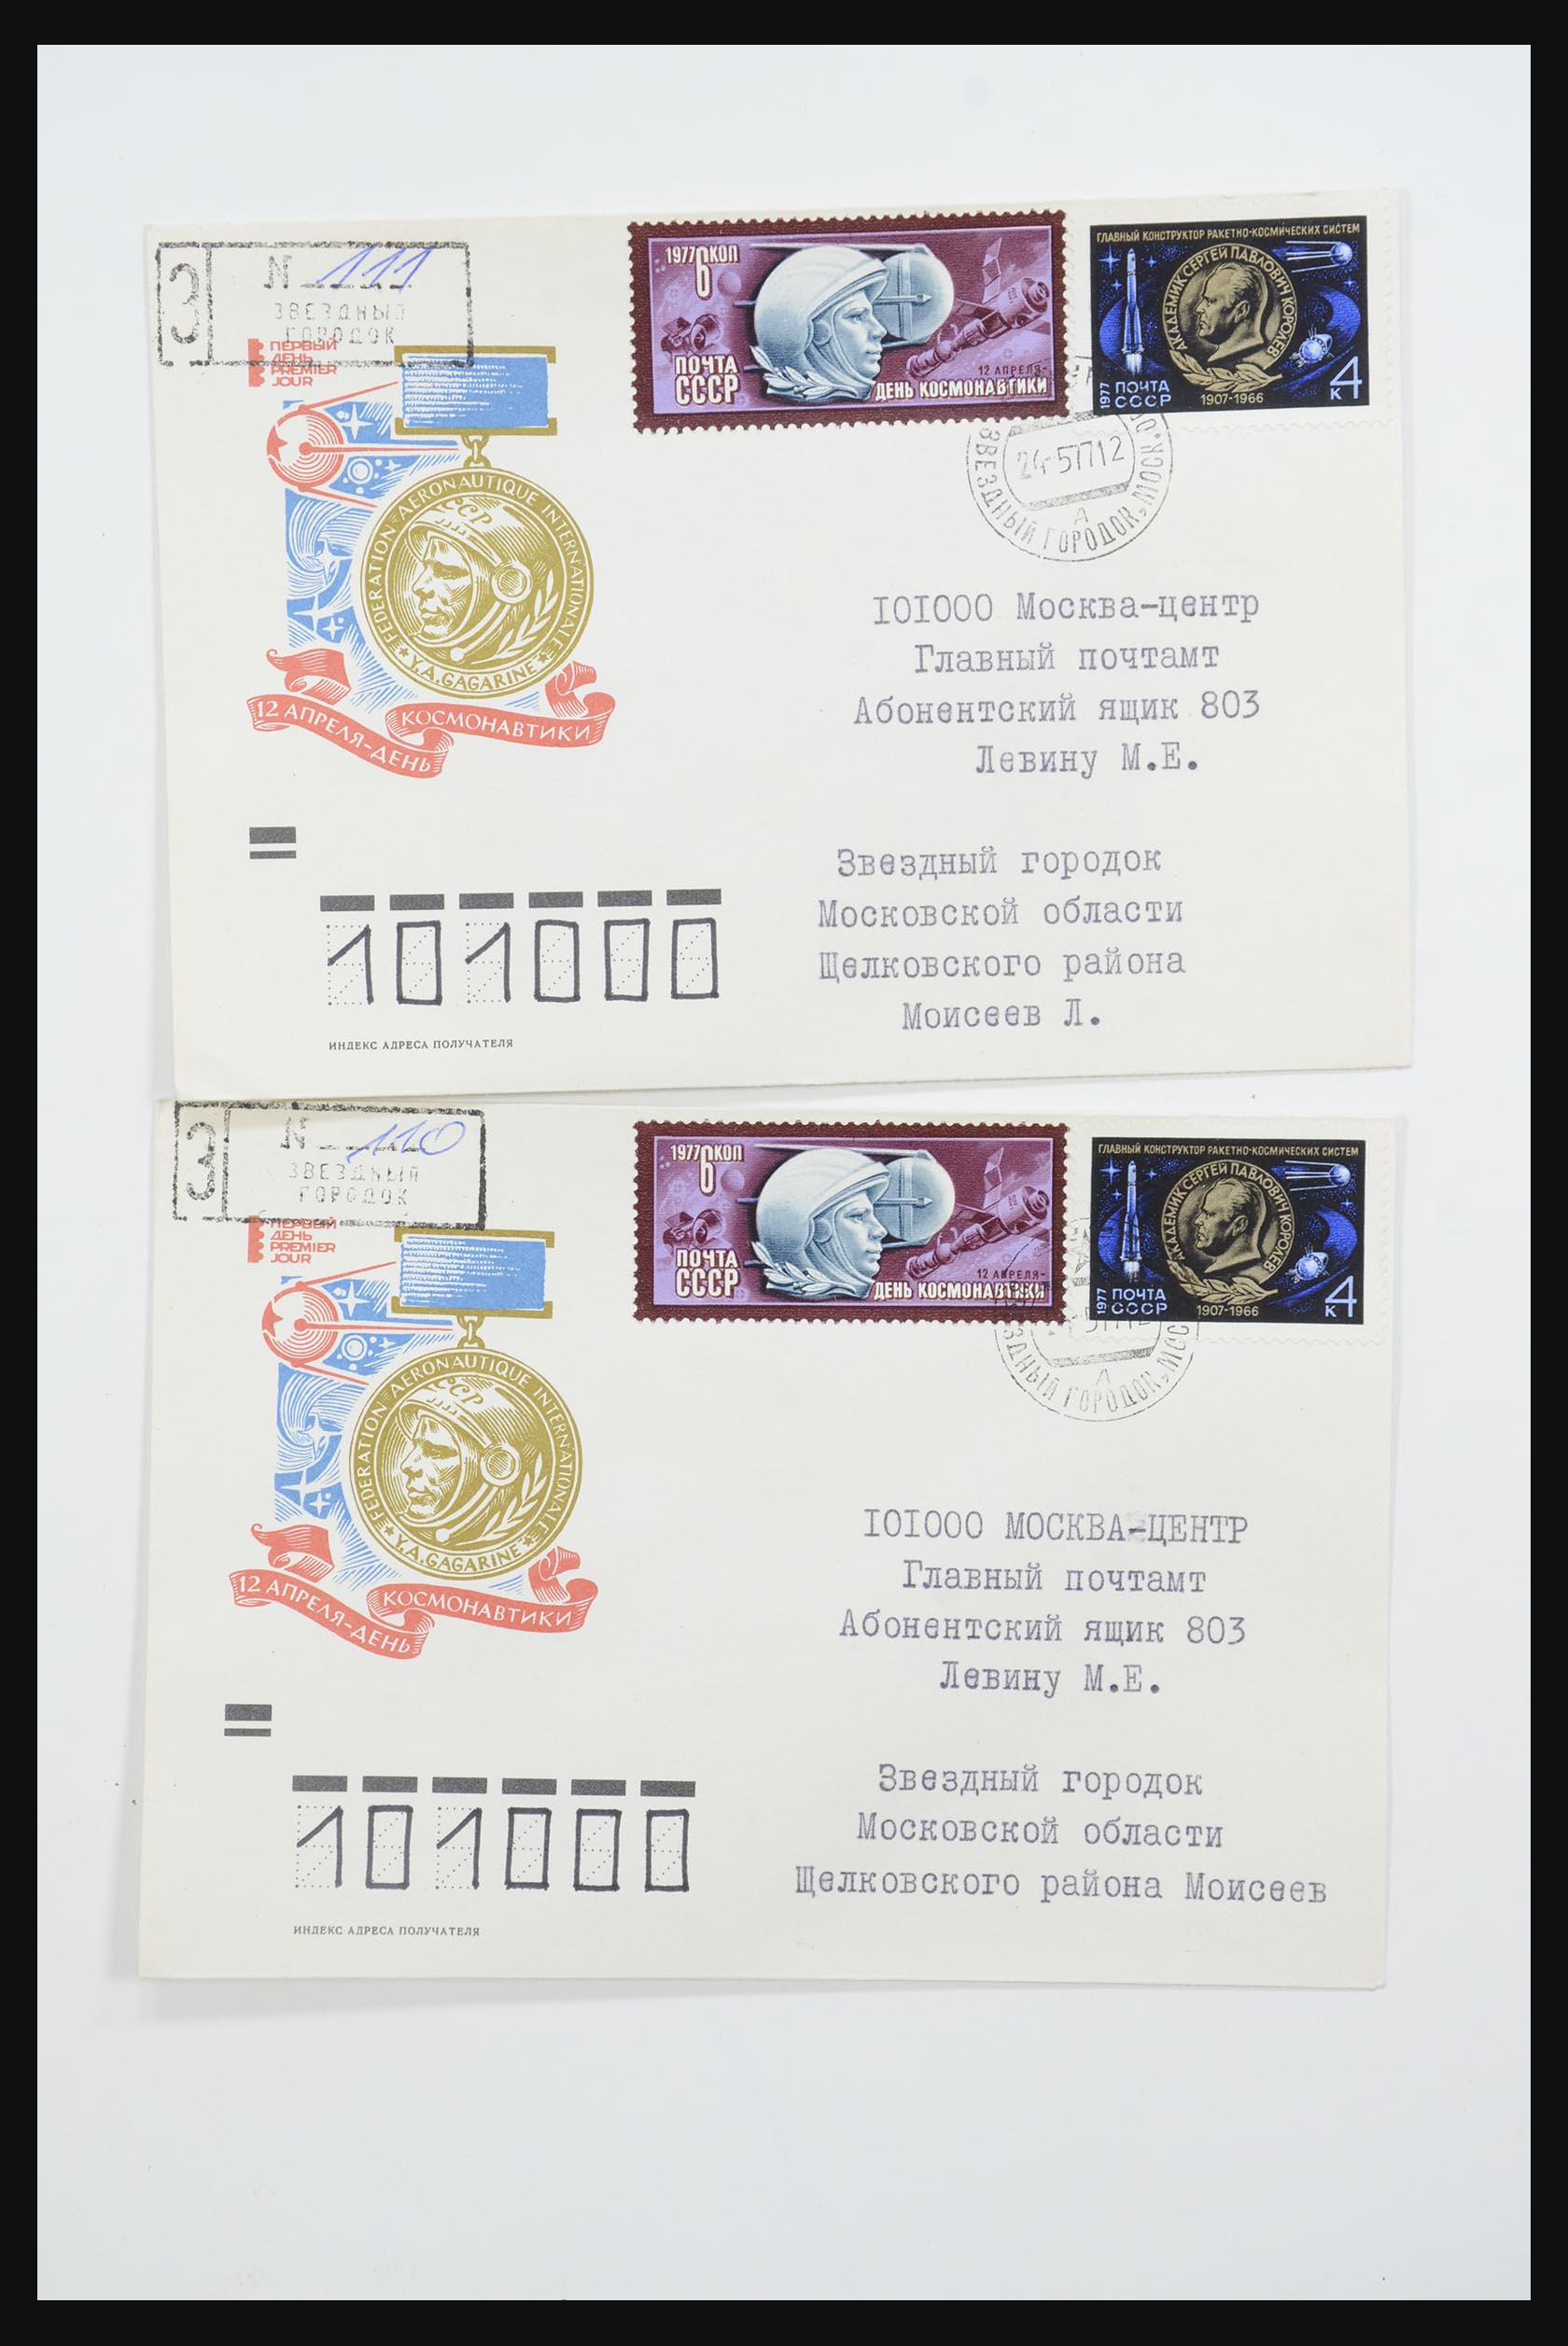 31605 0025 - 31605 Rusland postwaardestukken jaren 50-60.